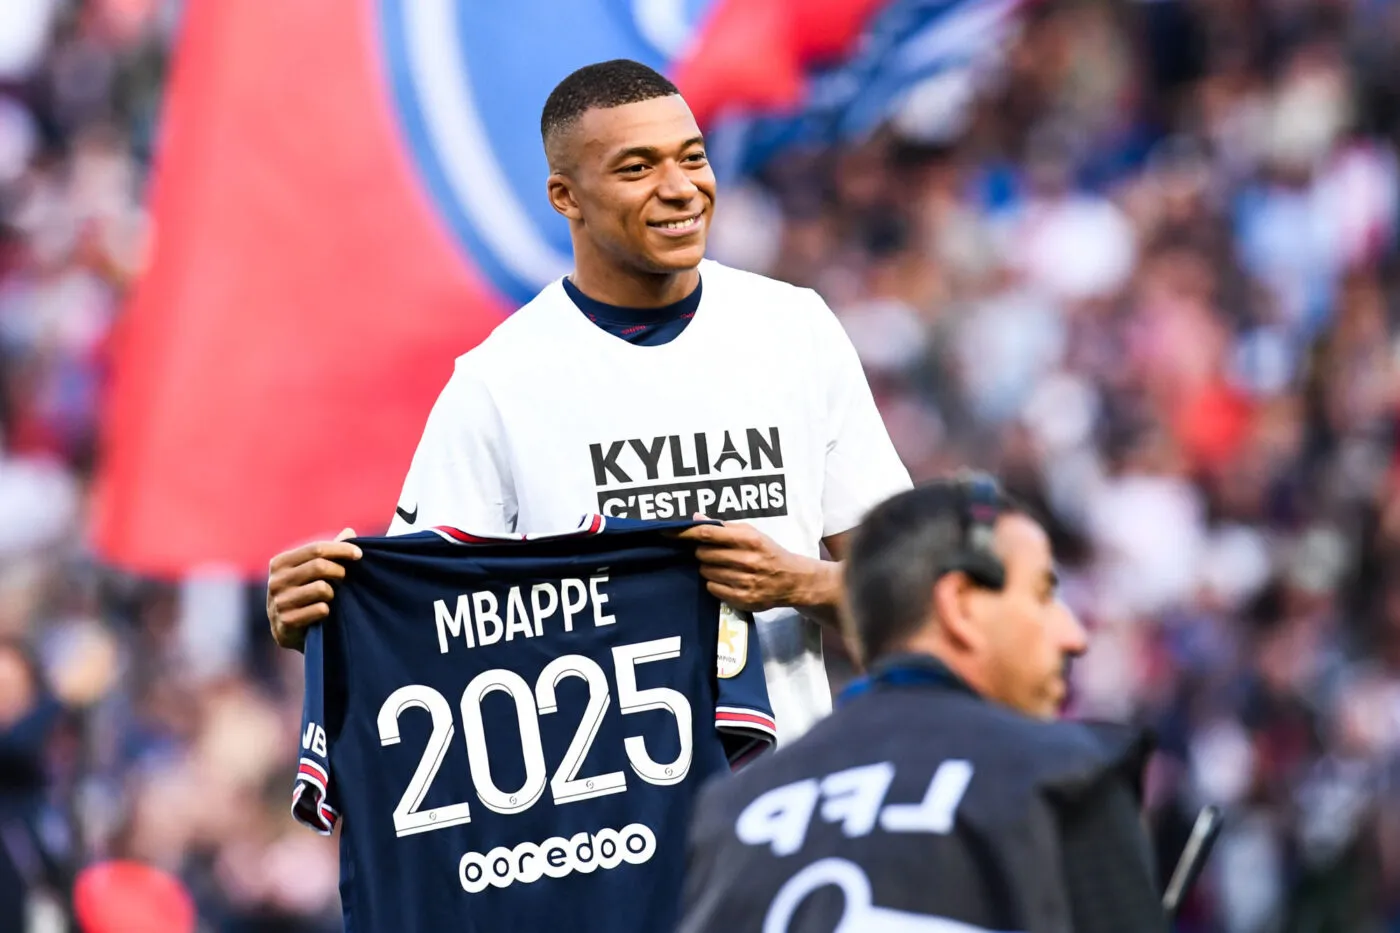 Kylian Mbappé ne voulait pas poser avec le maillot « 2025 » il y a